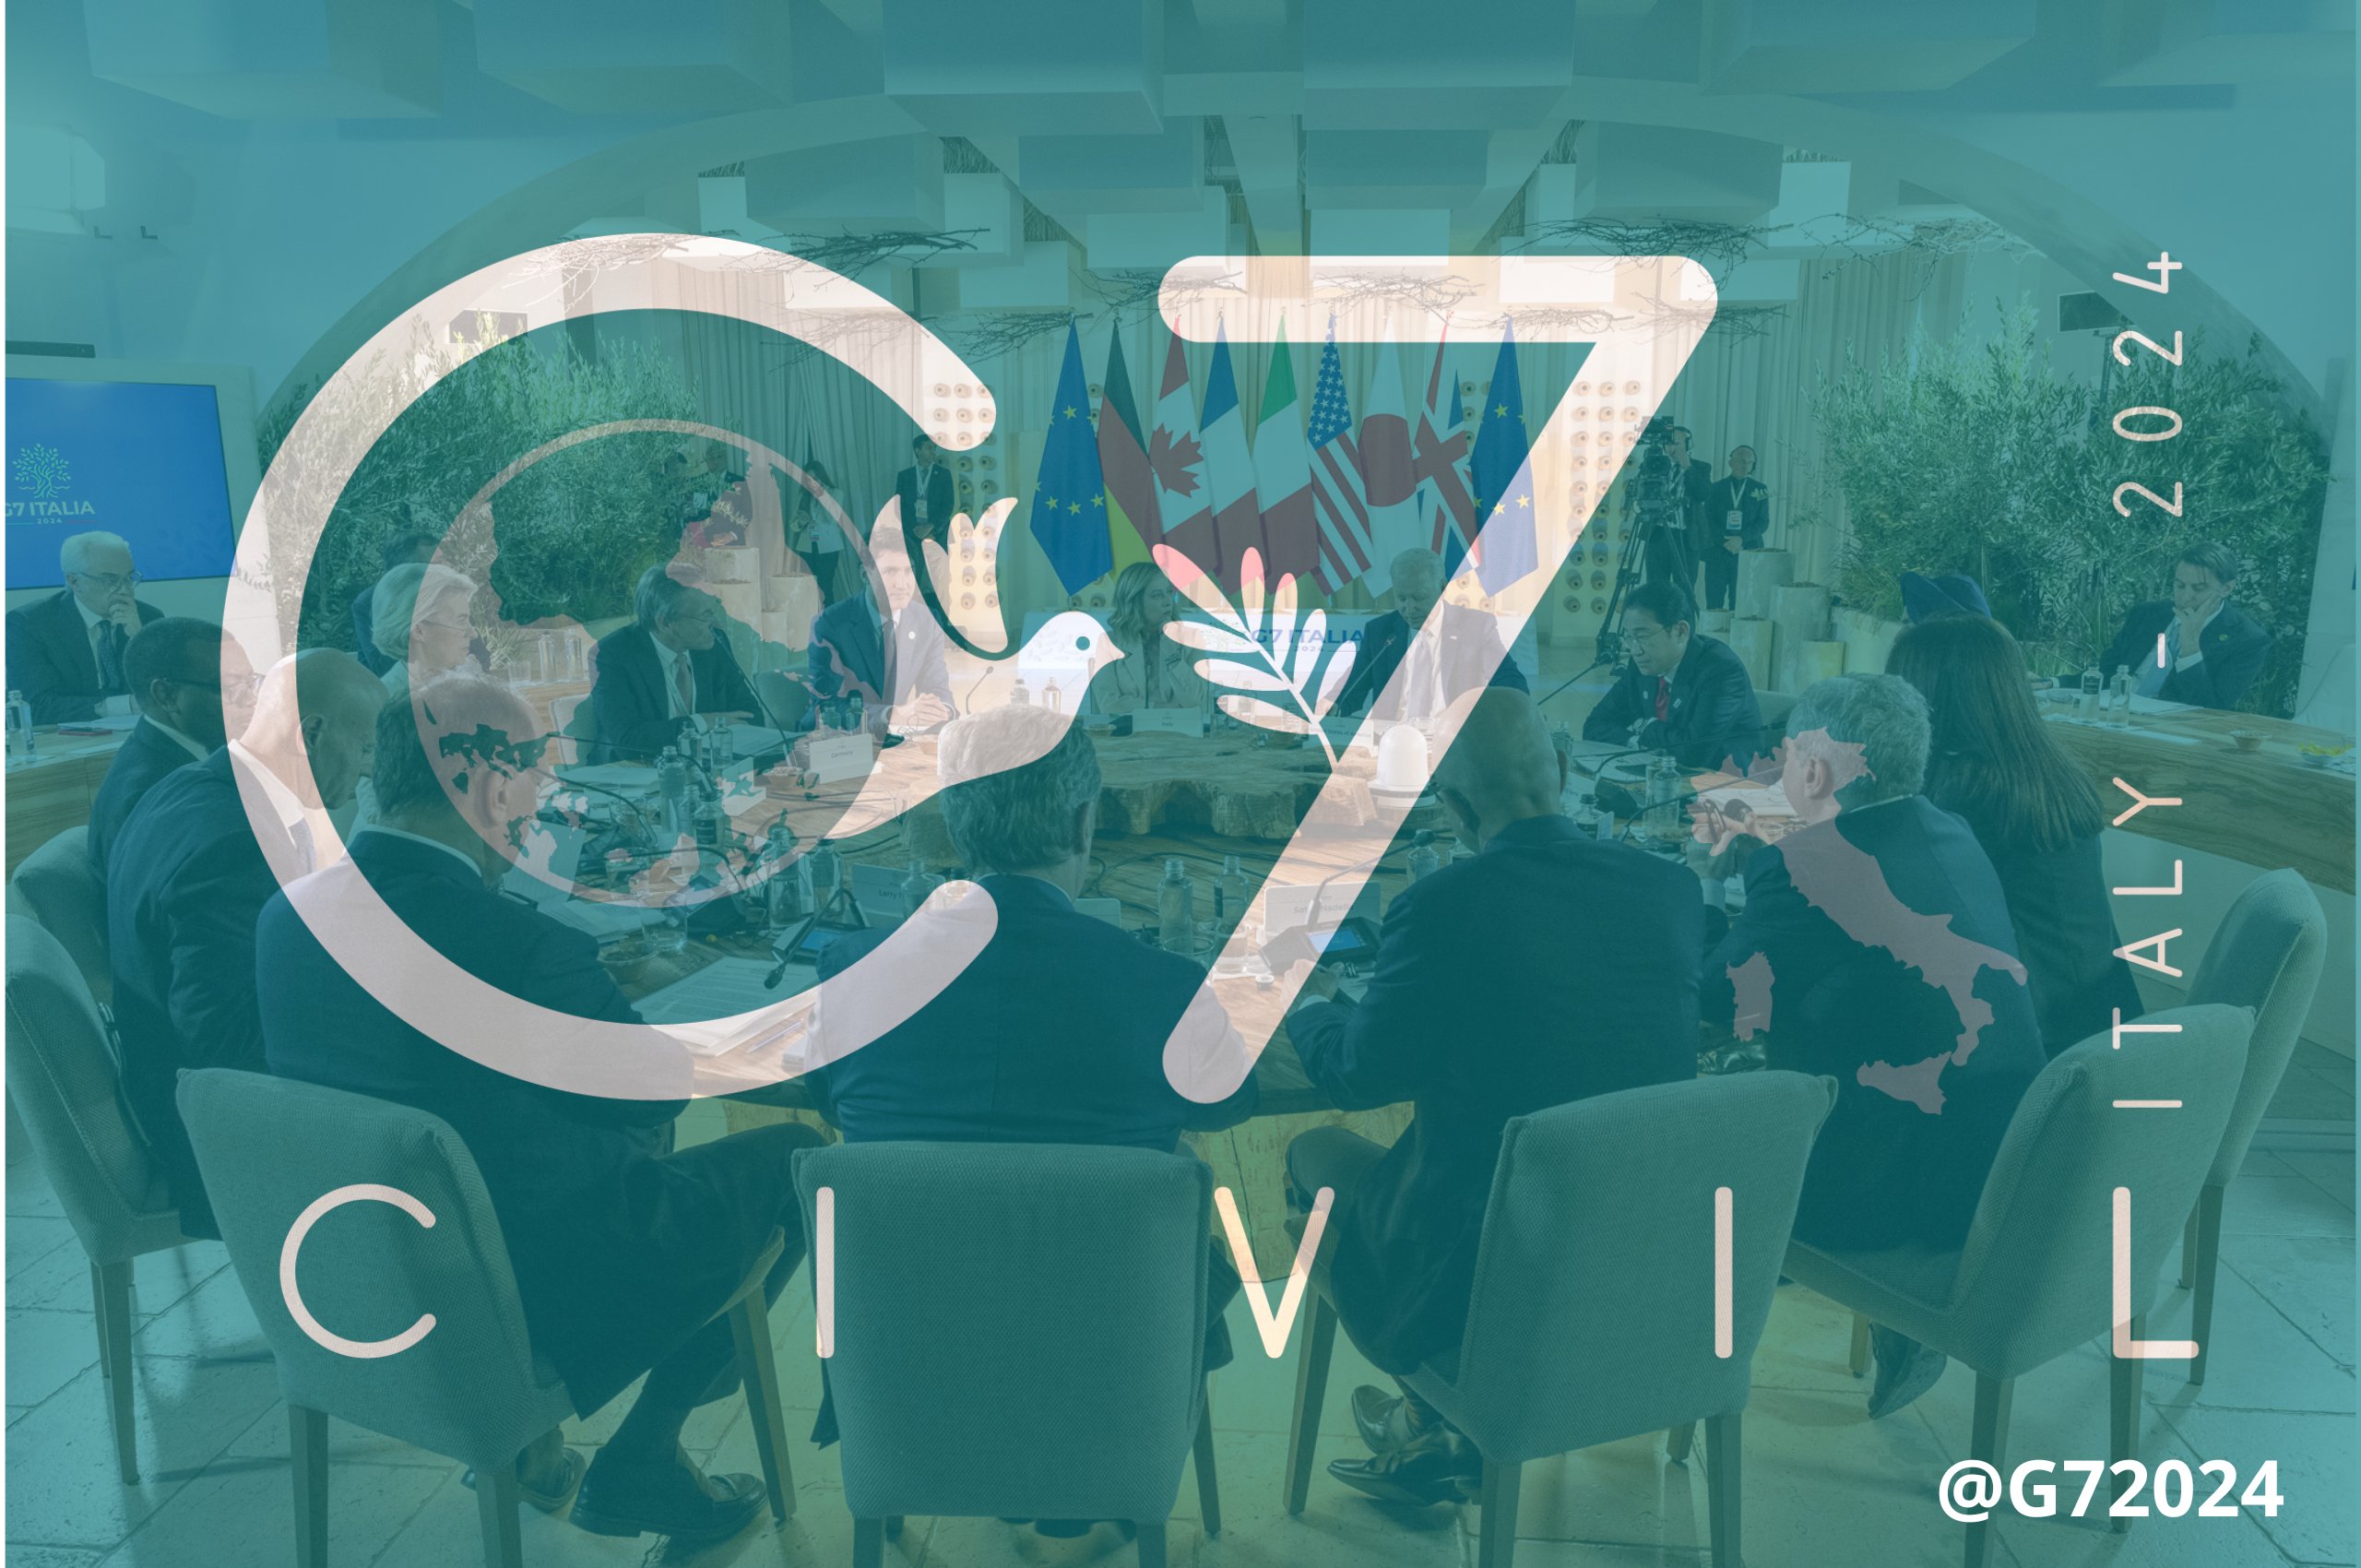 Il Civil 7 commenta negativamente il vertice dei leader: “il G7 fermo al qui e ora”